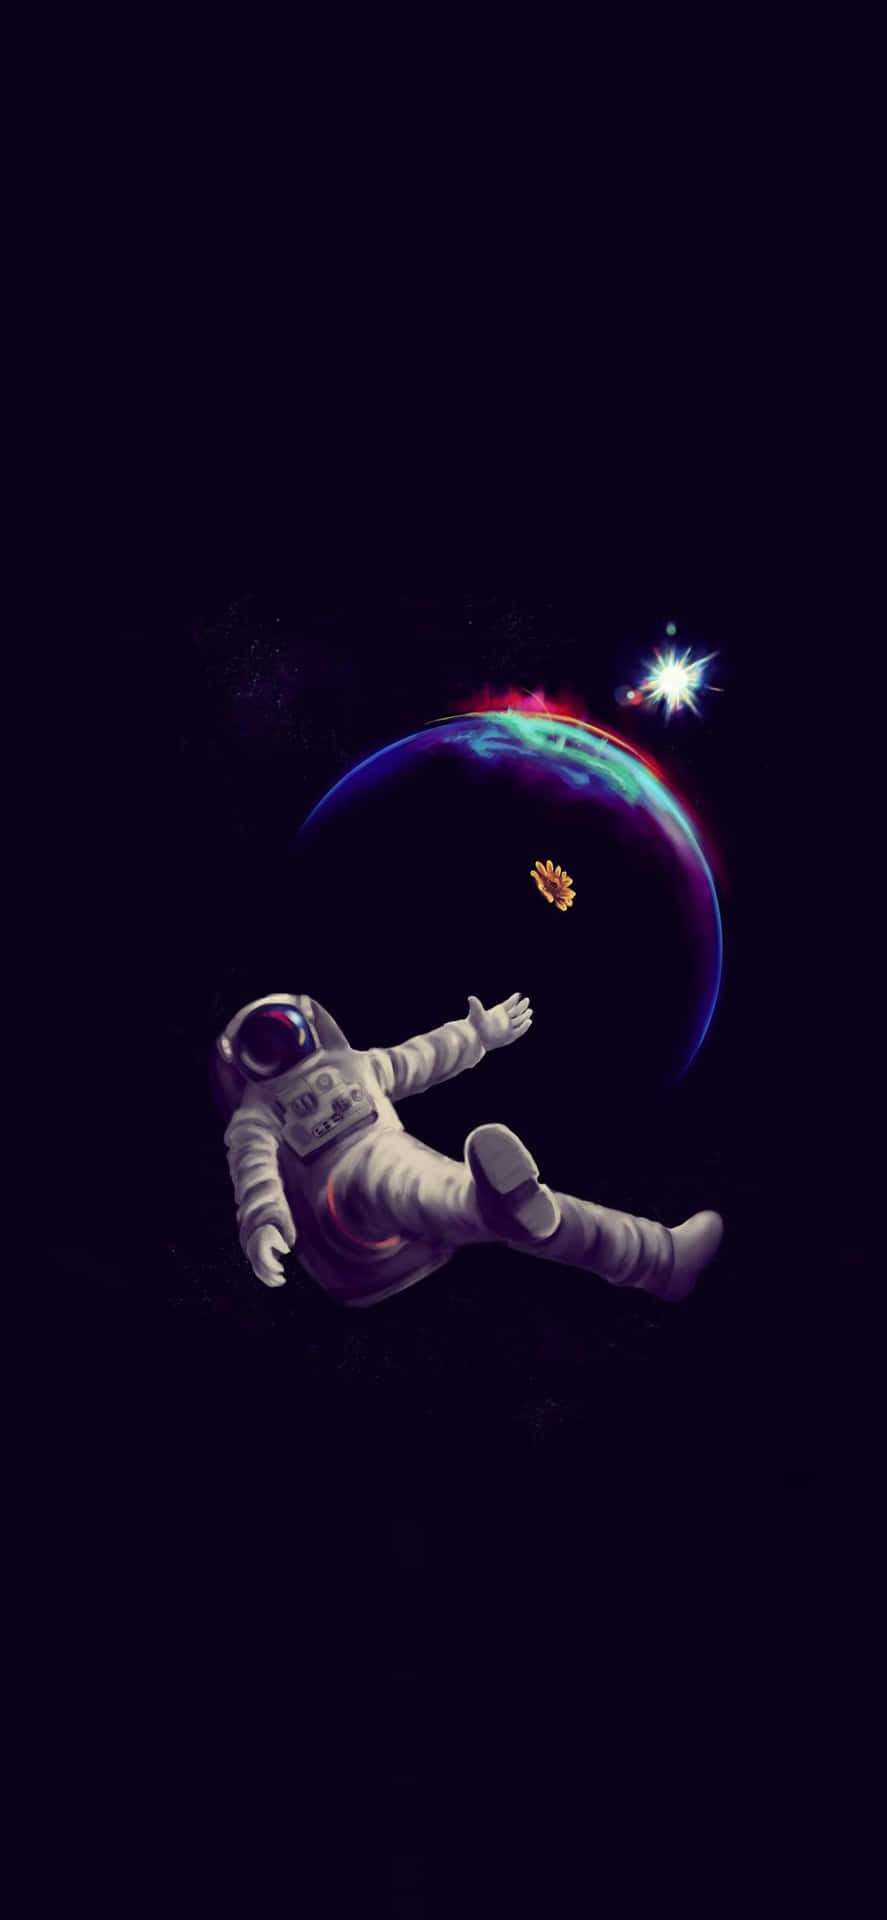 Repræsenterer sammenstødet mellem to verdener - denne astronaut iPhone tapet bringer de uendelige muligheder for rummet til din lomme. Wallpaper